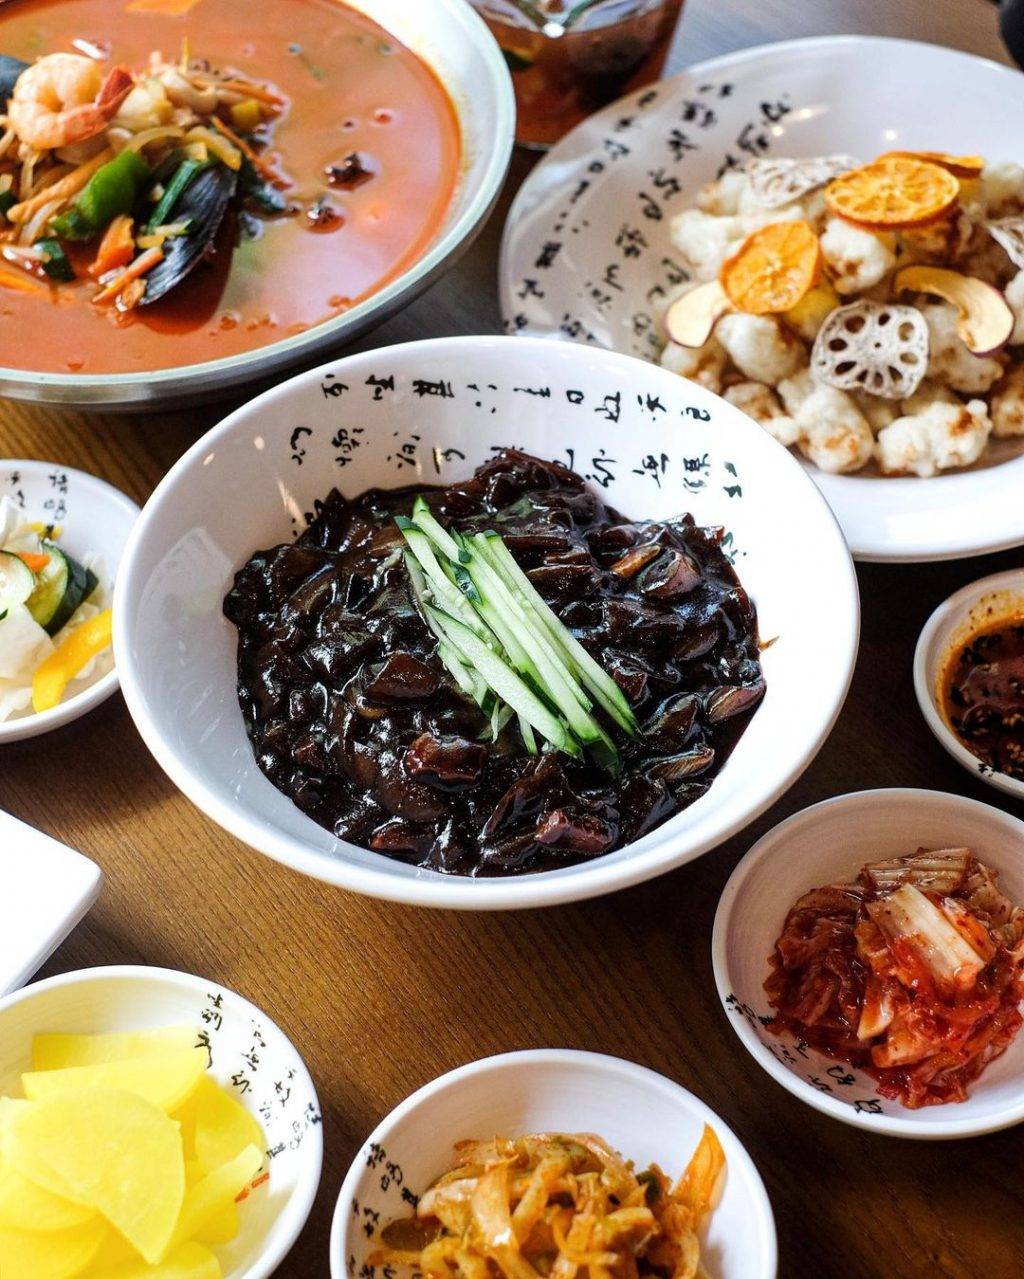 来Itaewon Jjajang嗦面！🍜炸酱面+海鲜面+糖醋肉，将韩剧里的中华料理搬进现实